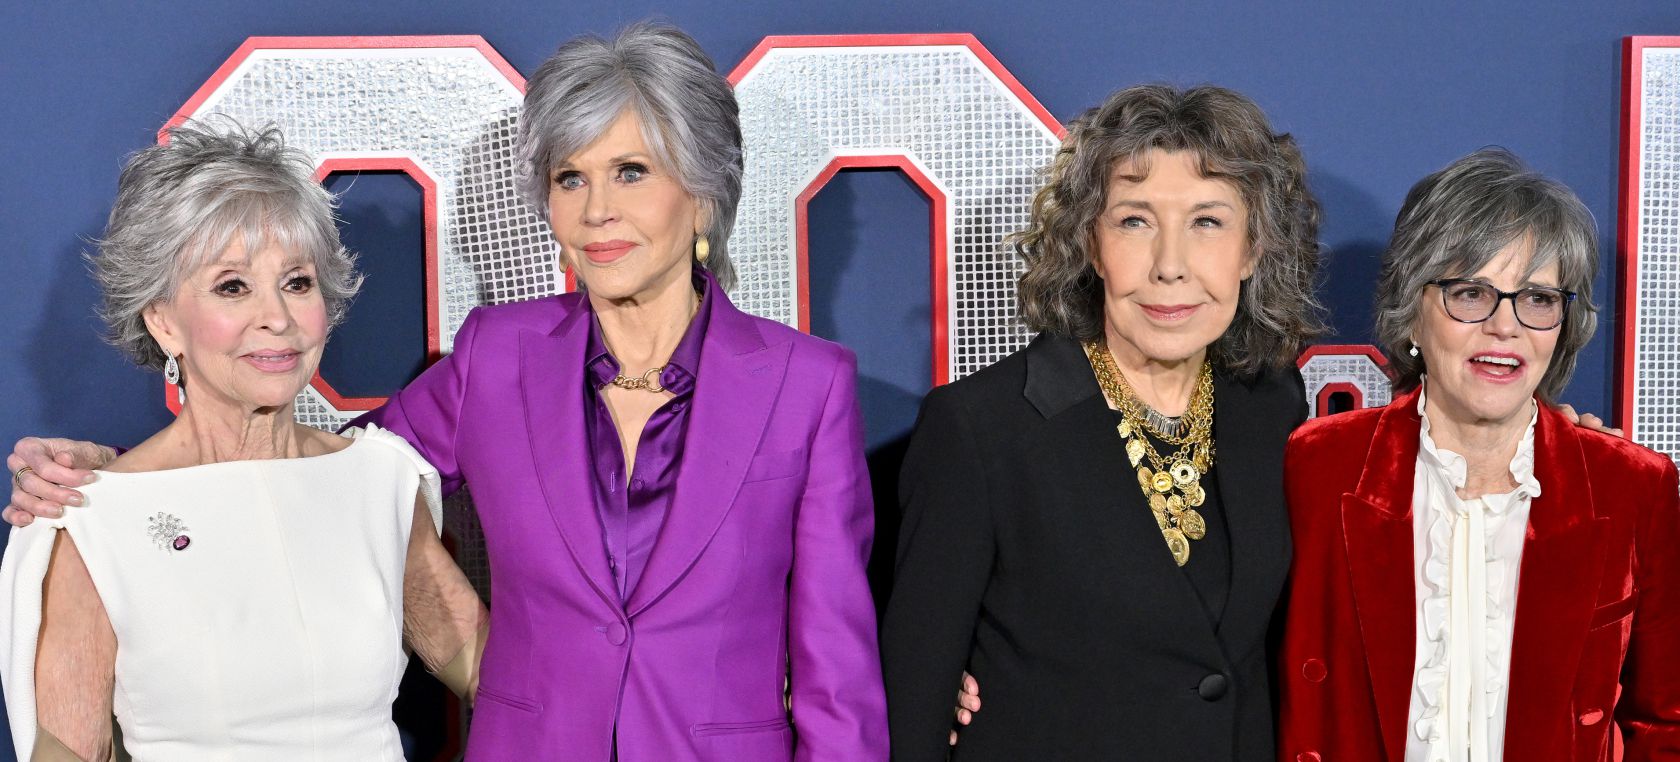 Jane Fonda, Rita Moreno, Lily Tomlin y Sally Field: cuatro iconos de Hollywood que triunfan con más de 75 años